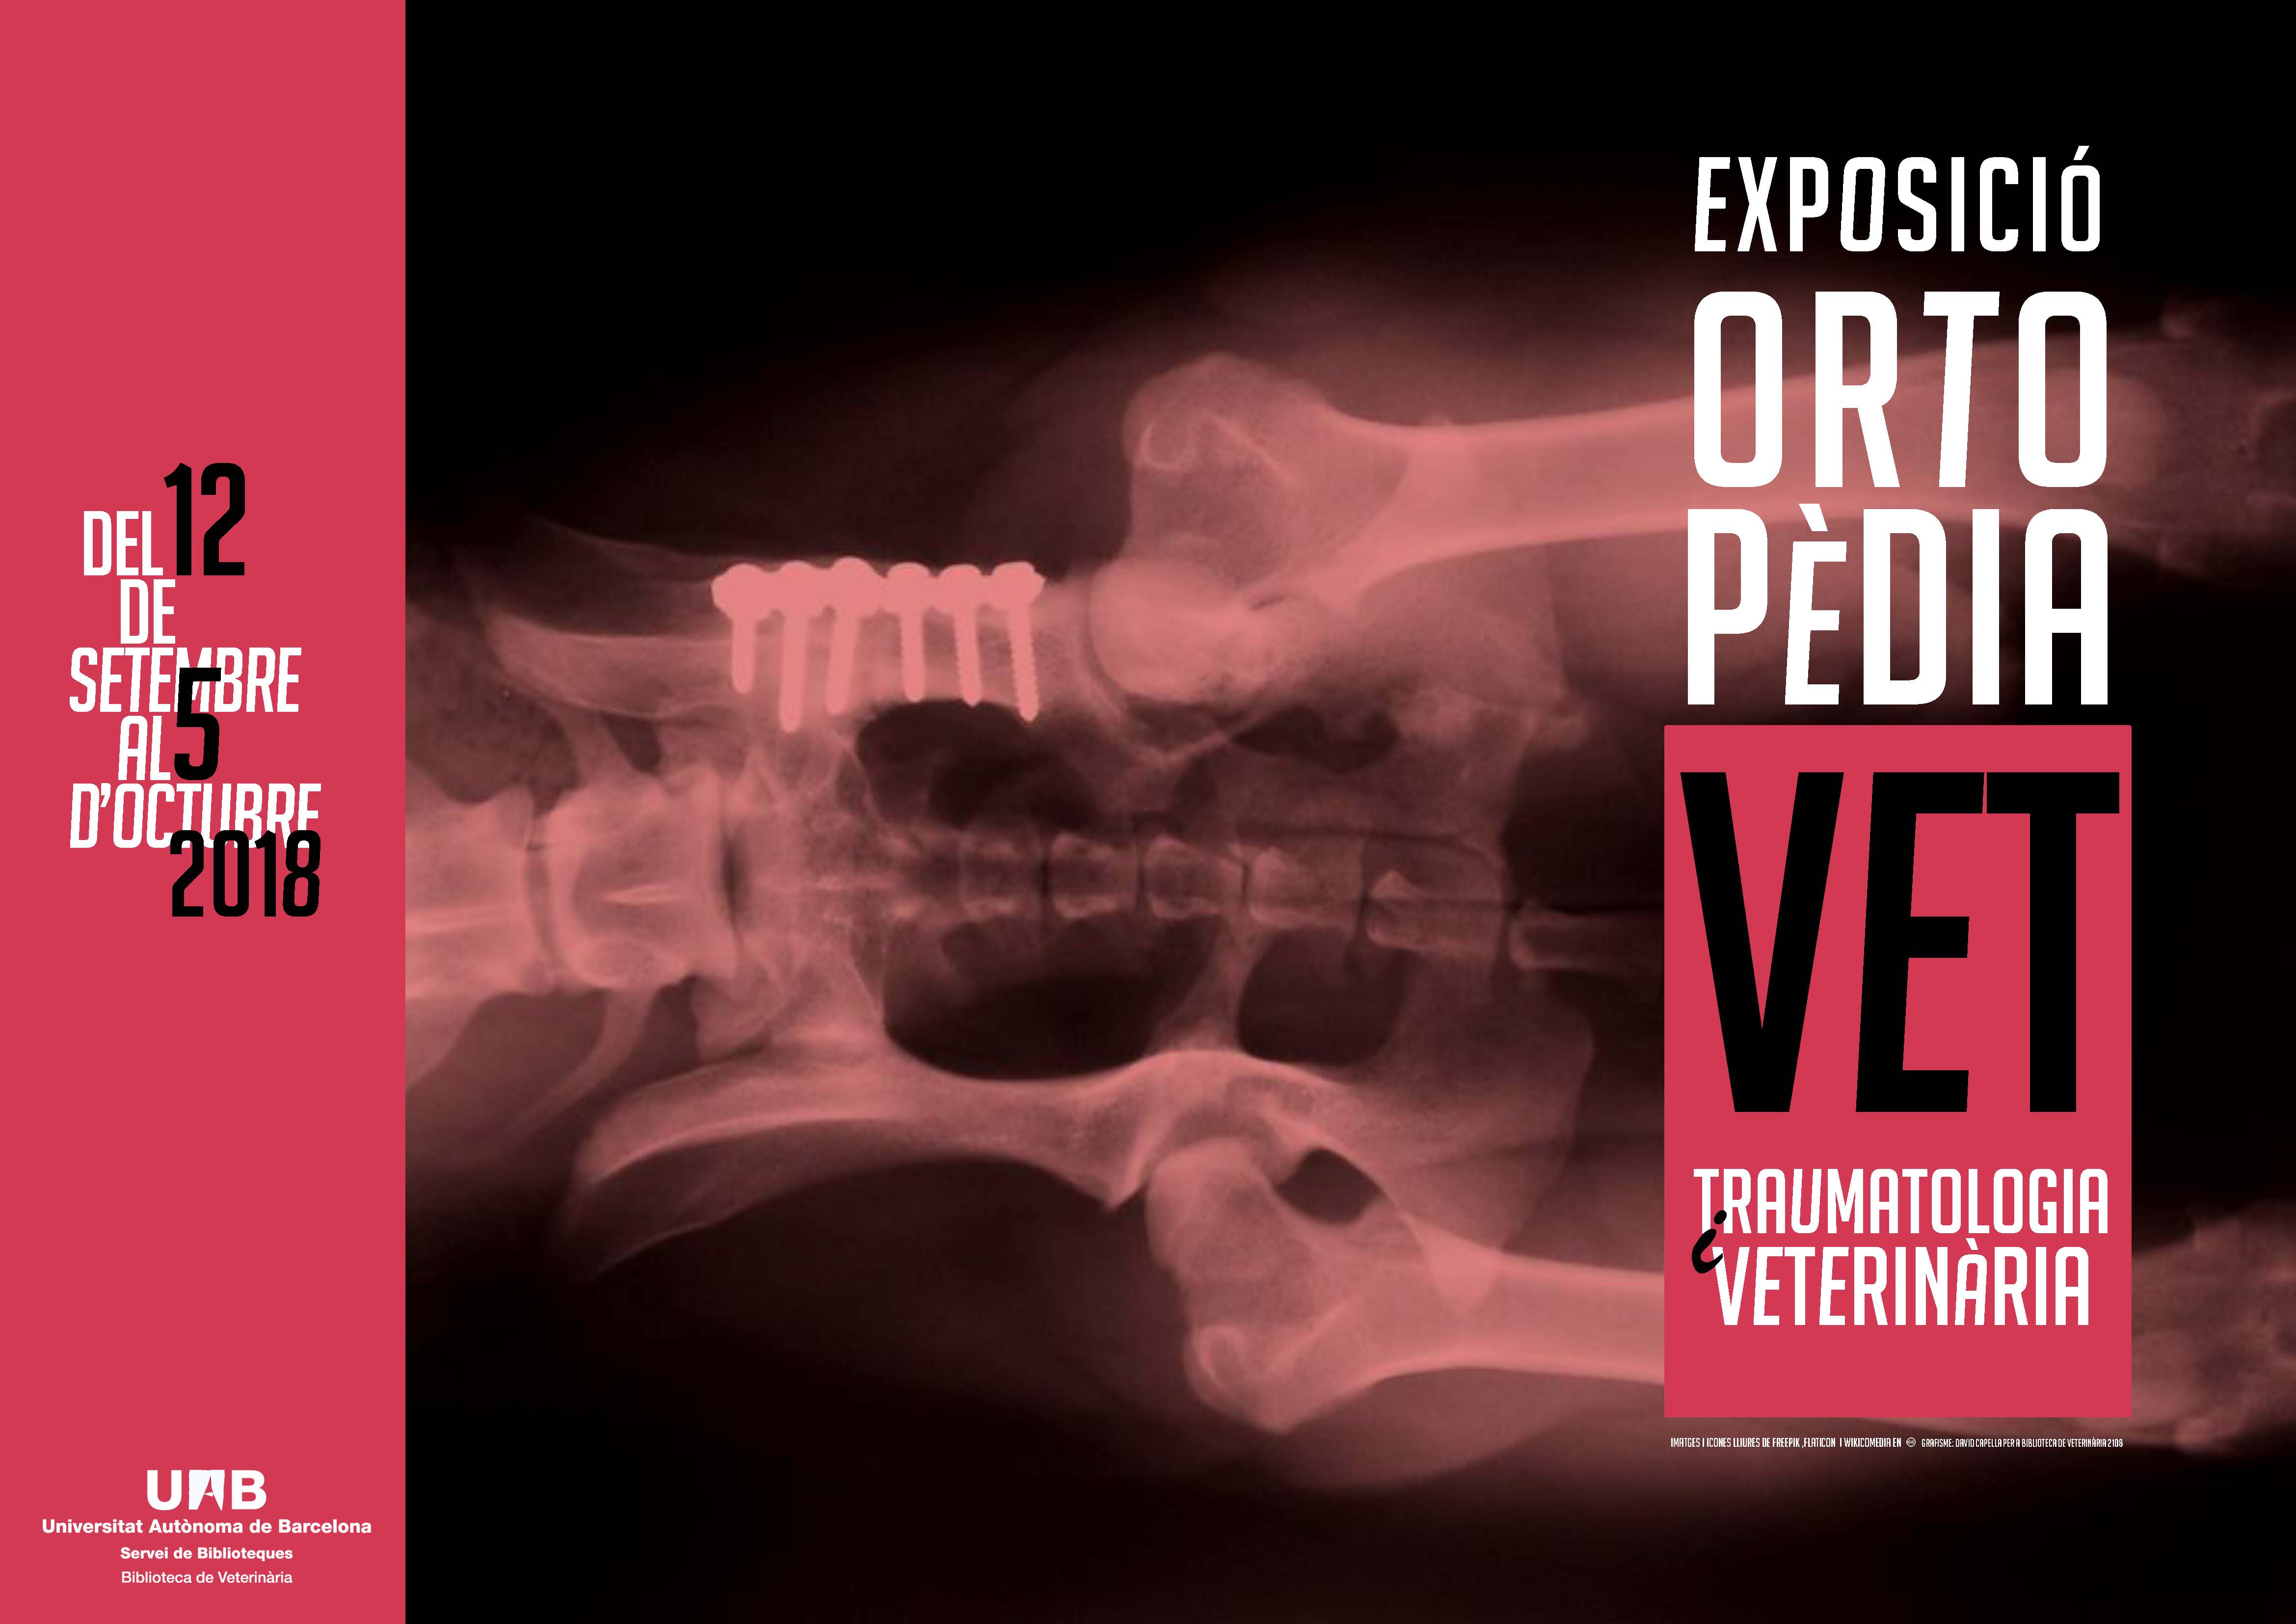 Exposición Ortopedia y traumatología veterinaria